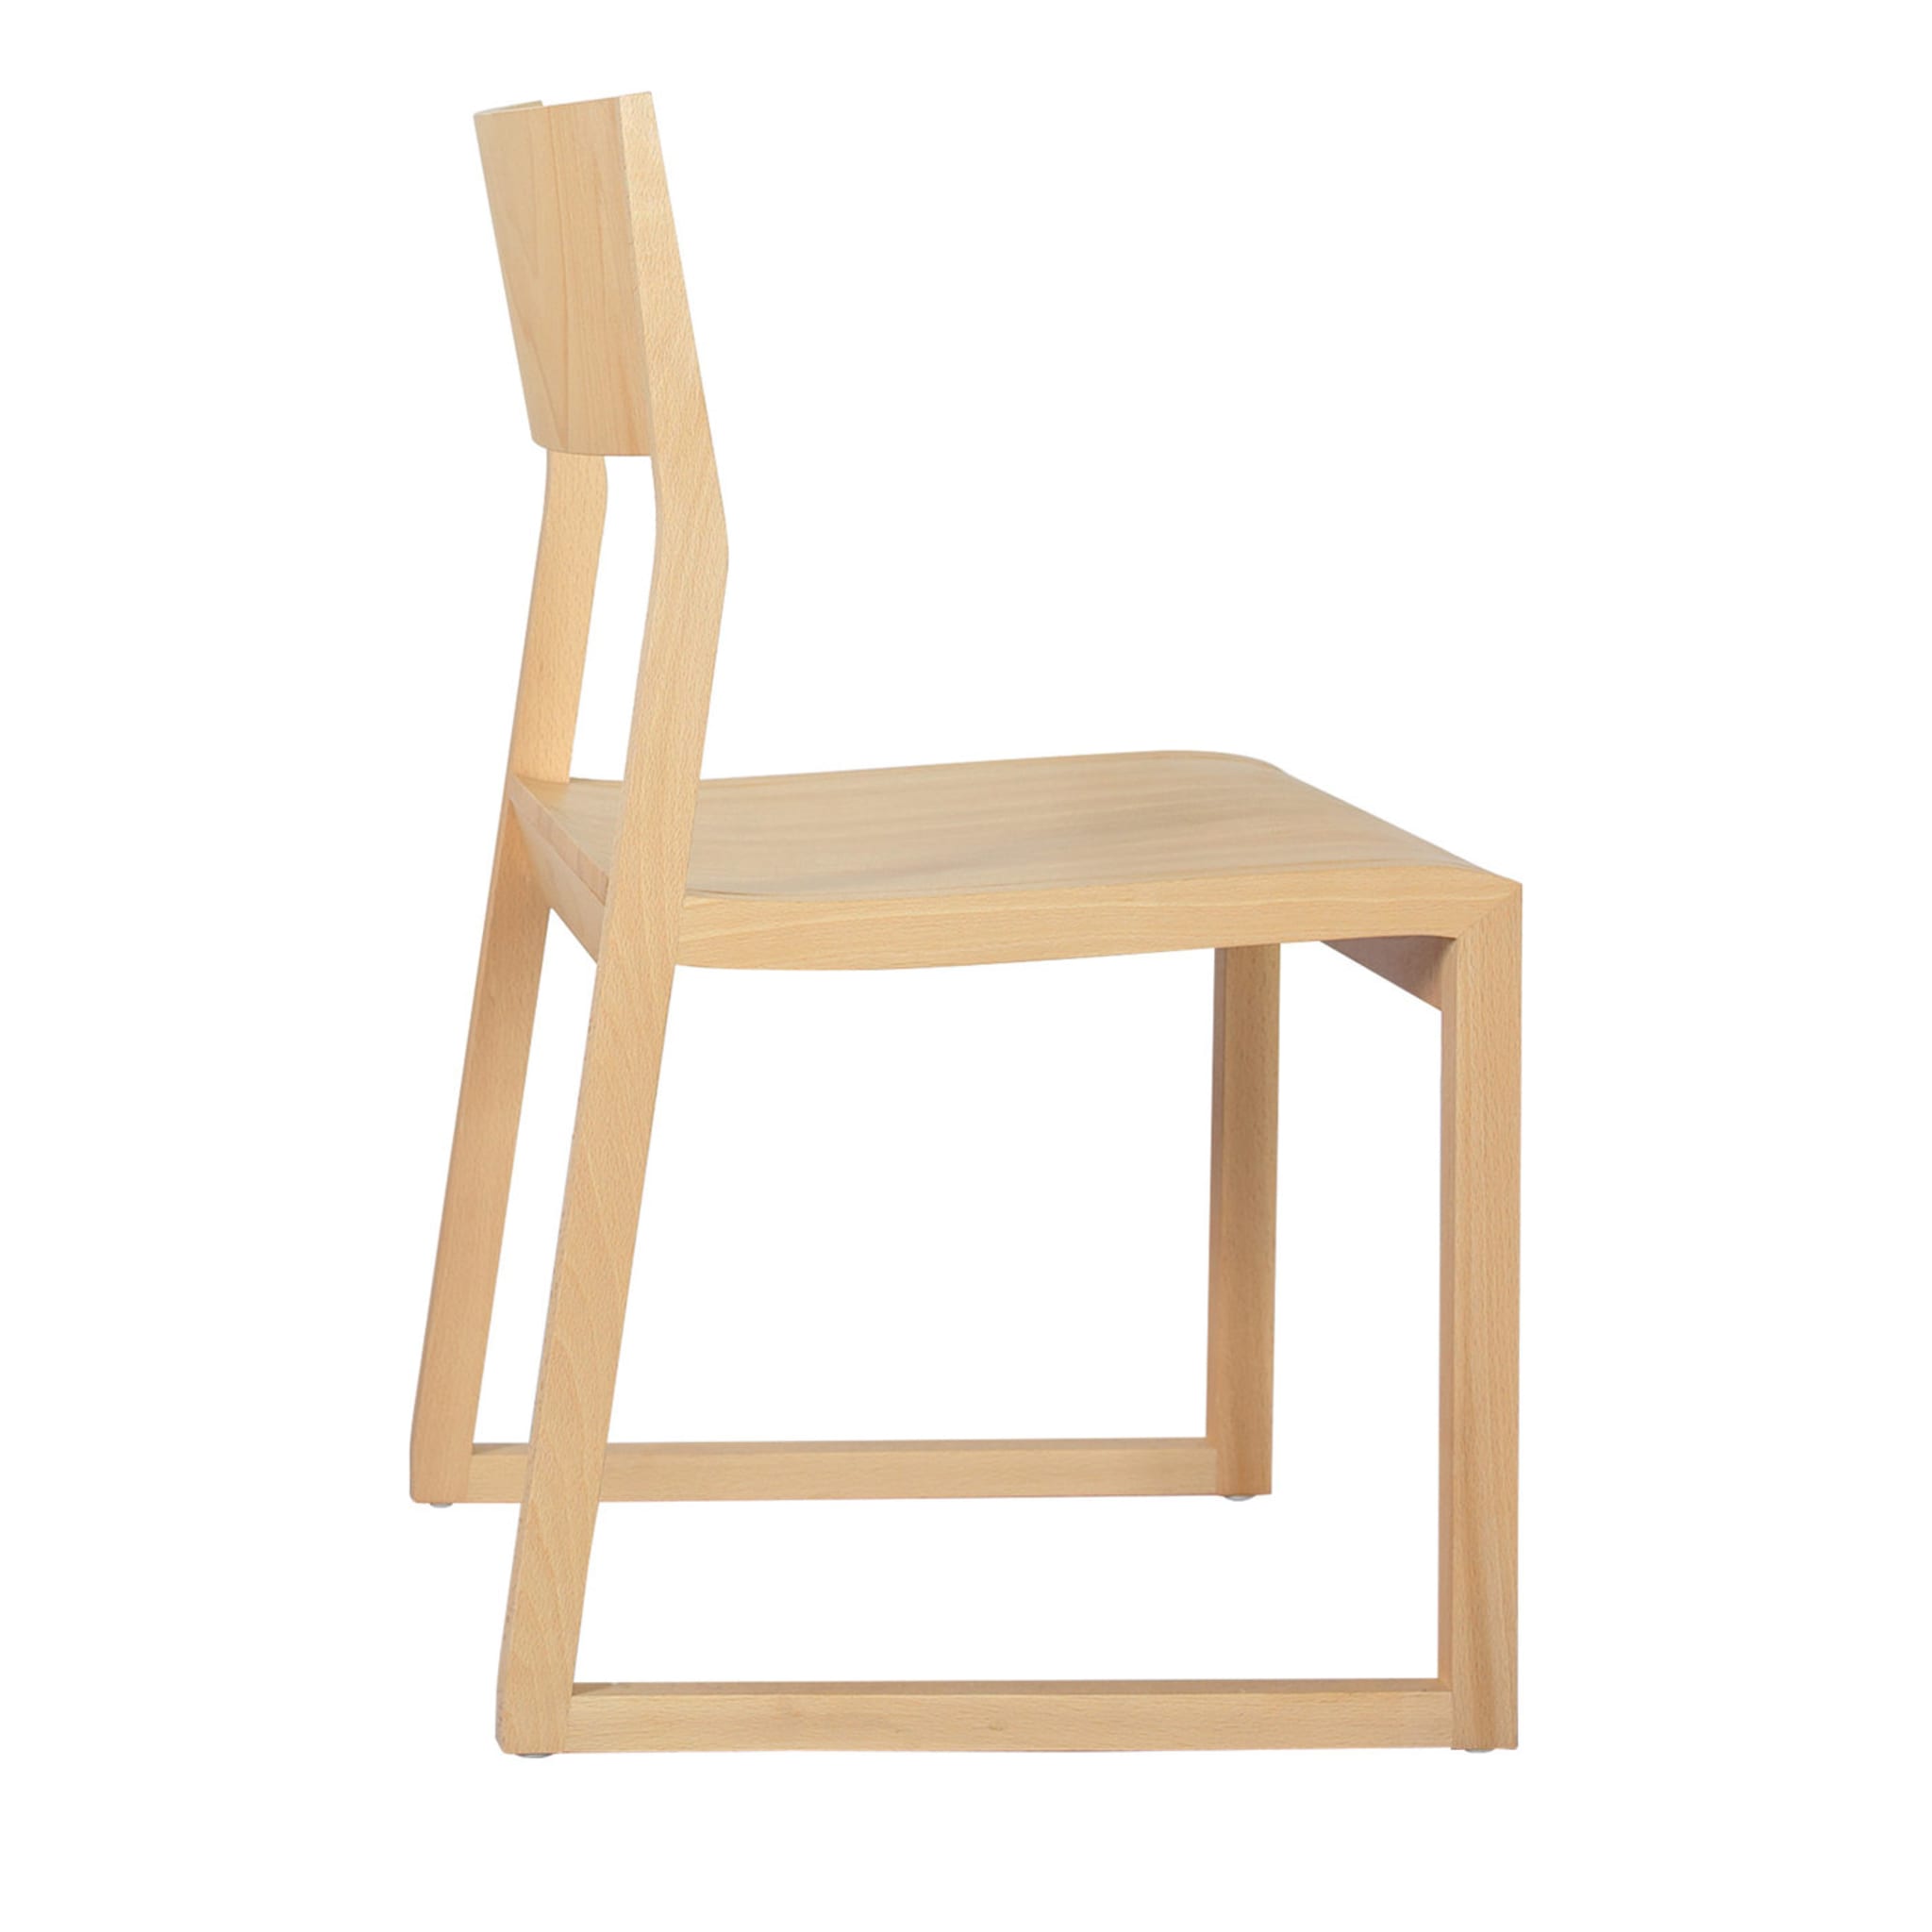 Set of 2 Natural Sciza Chairs by Takashi Kirimoto - Main view